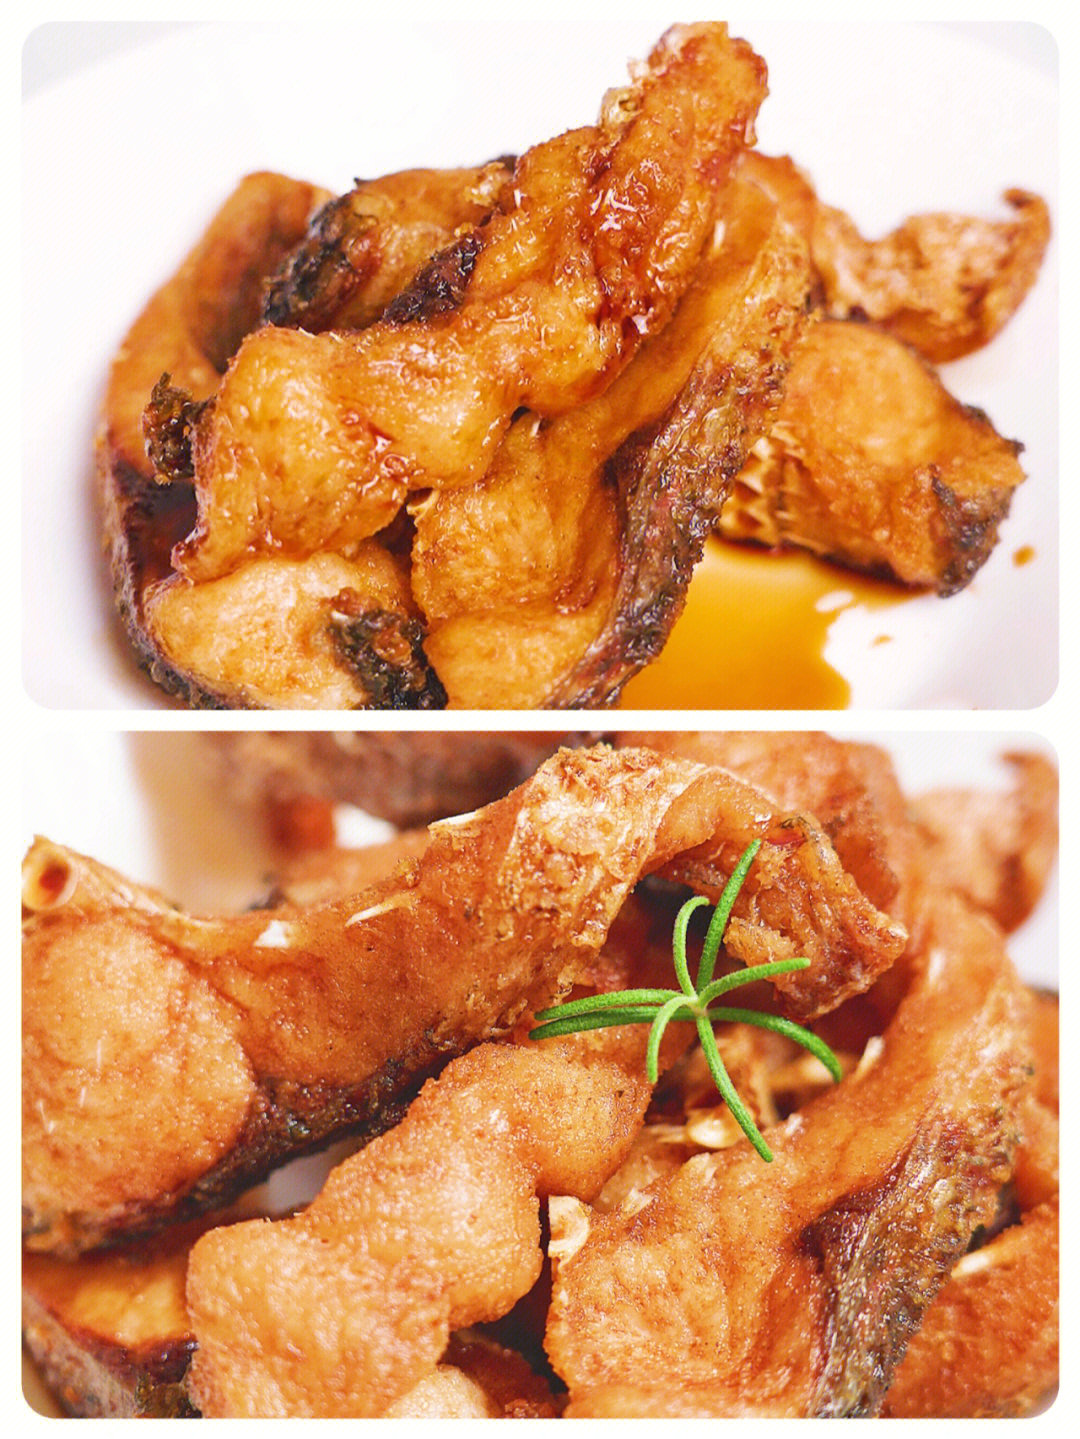 96熏鱼是上海的一道特色菜,又叫上海爆鱼,炸过的鱼肉吸满汤汁,香酥